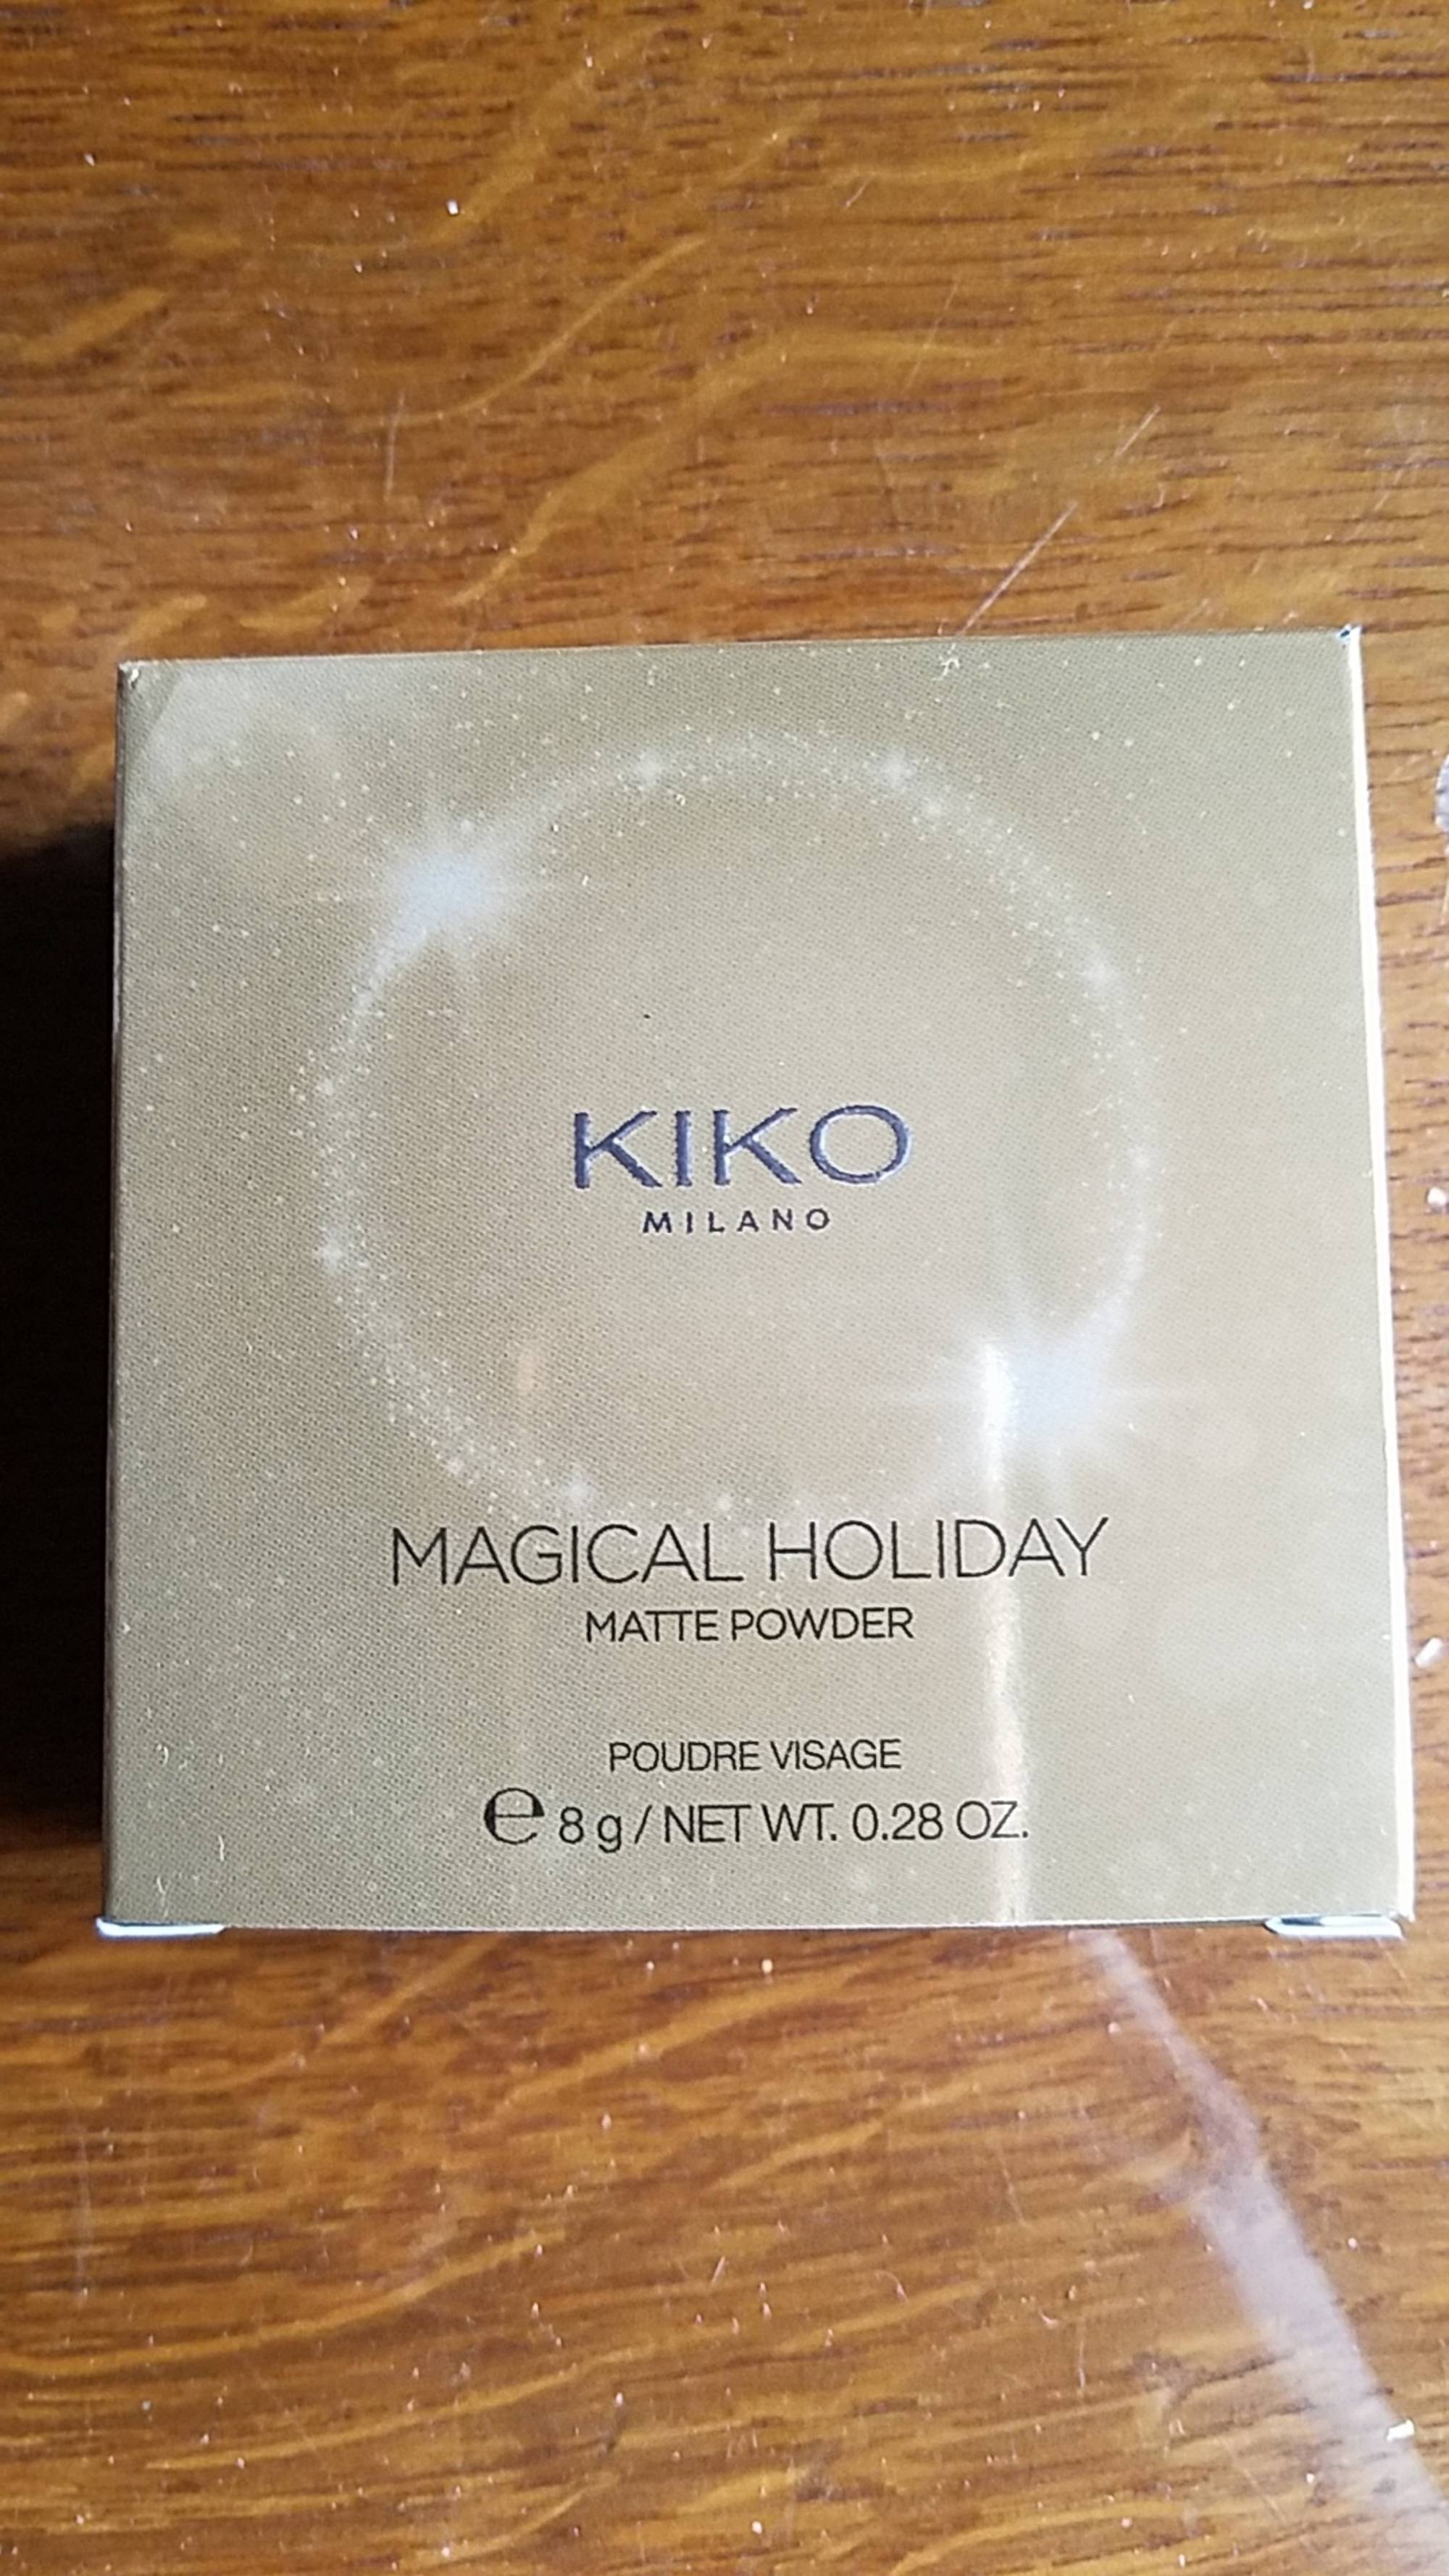 KIKO - Magical holiday matte powder - Poudre visage